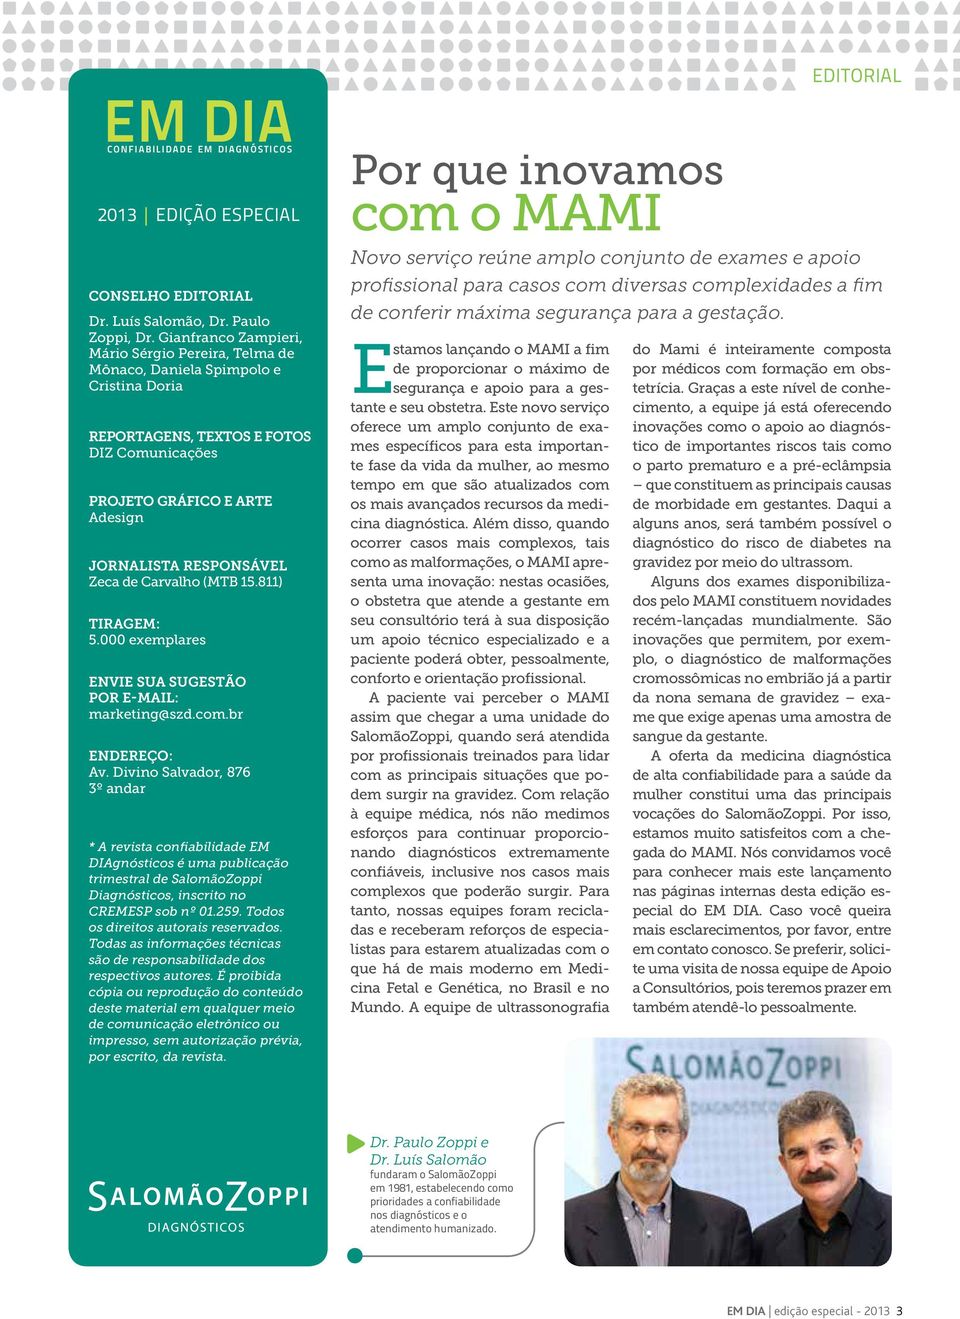 de Carvalho (MTB 15.811) Tiragem: 5.000 exemplares Envie sua sugestão por e-mail: marketing@szd.com.br Endereço: Av.